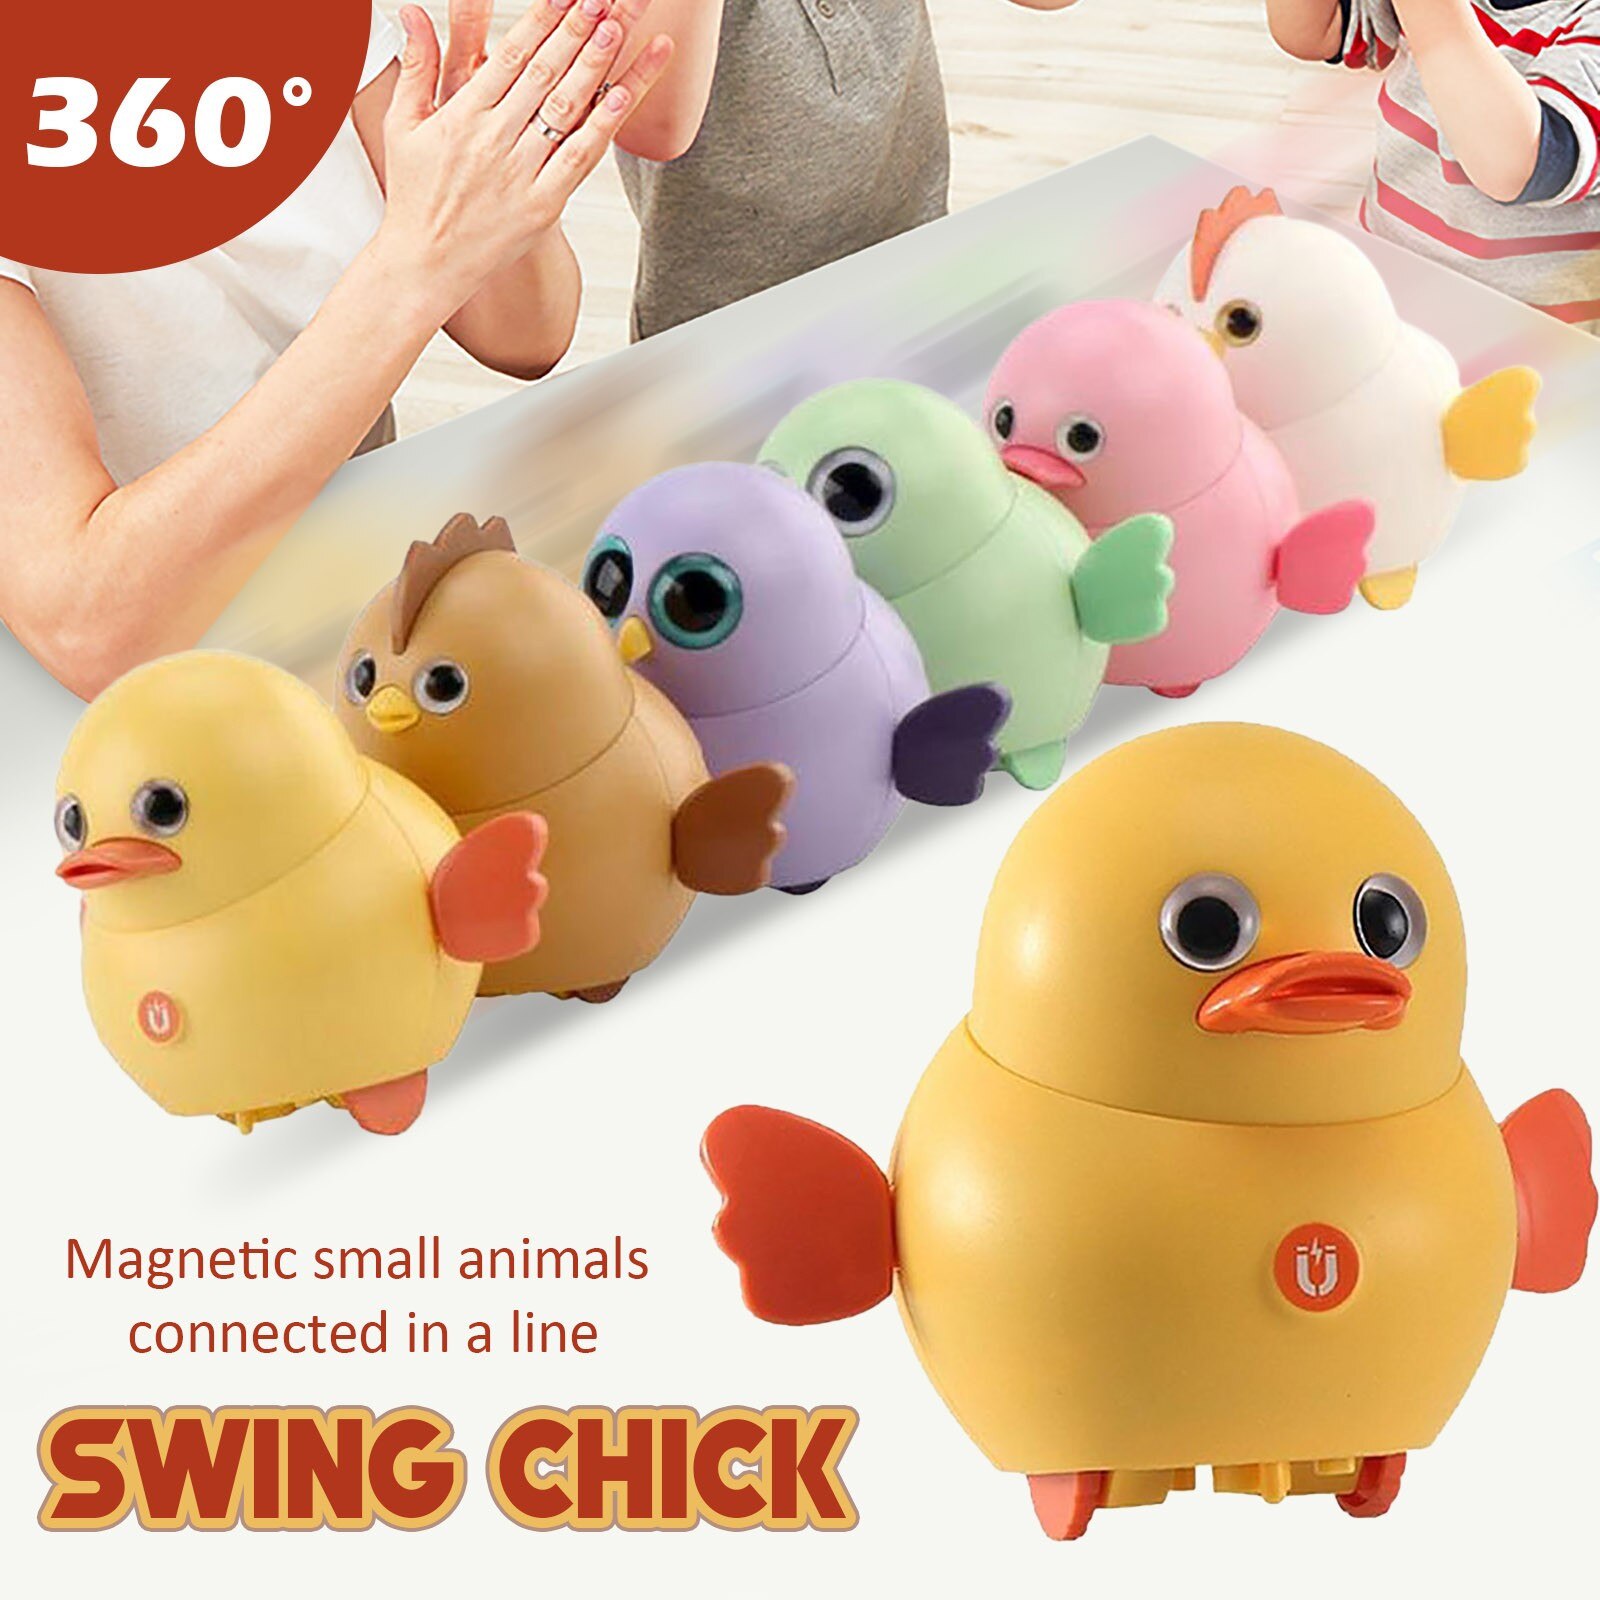 40 # Desktop Decoratie Leuke Elektrische Swing Magnetische Chick Eendje Lopen Squad Eend Swing Dier Speelgoed Leuke Grappige Kleine Speelgoed